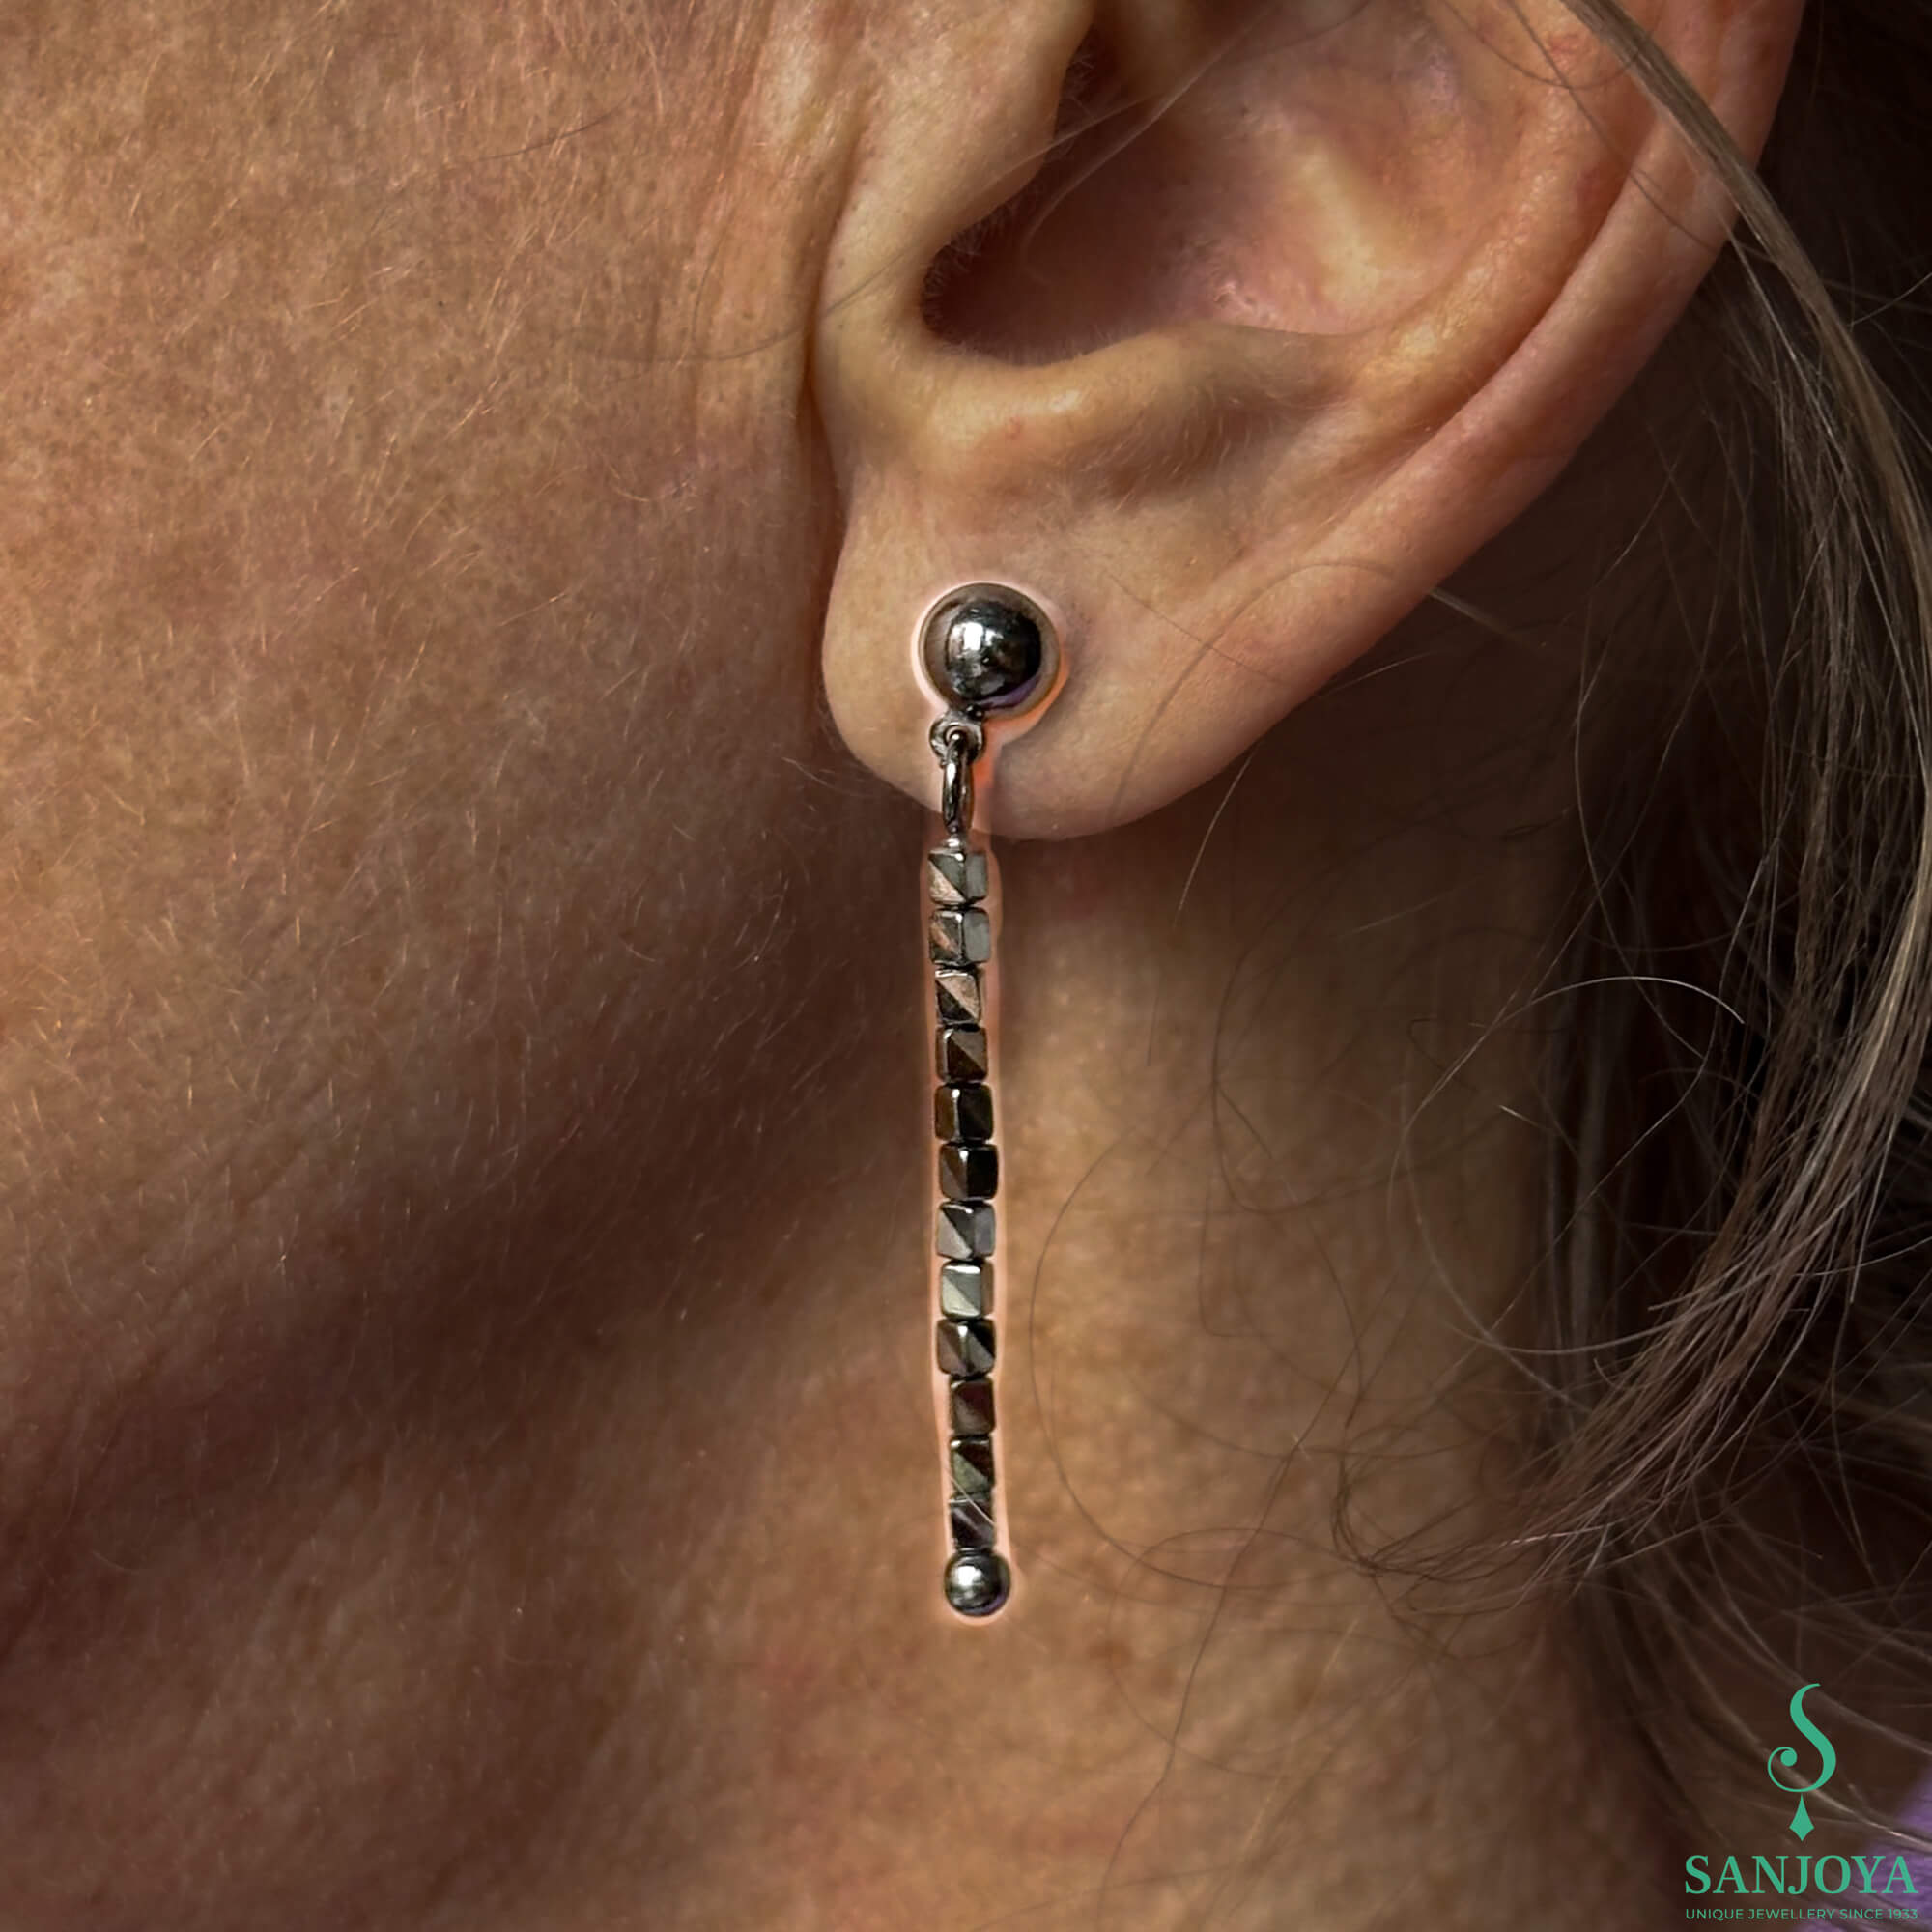 Long block earrings made of hematite